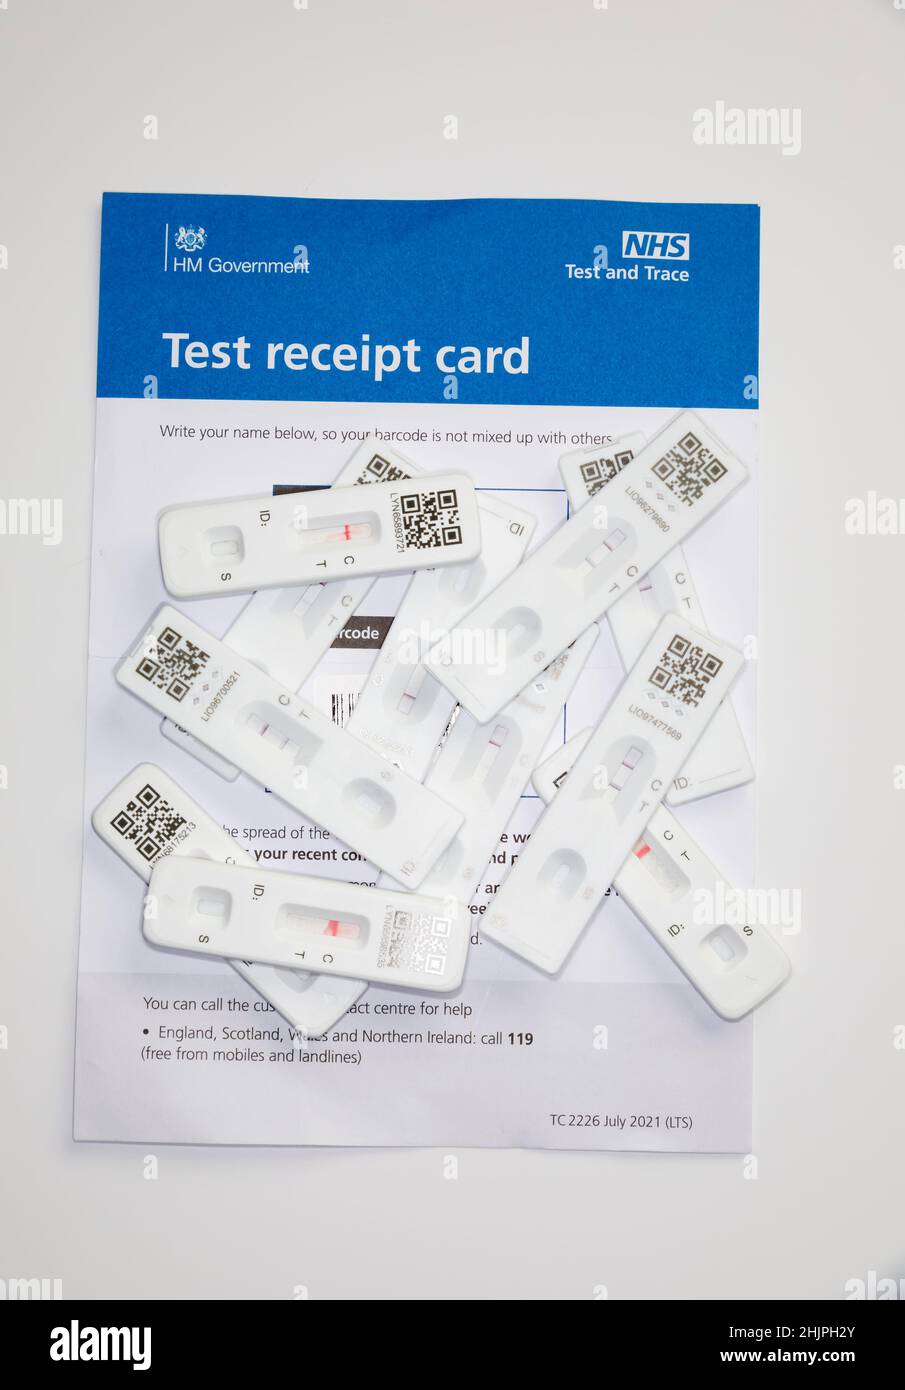 Résultats de test NHS Lateral Flow utilisés montrant des résultats positifs et négatifs sur la carte de réception de test NHS, blanche. Banque D'Images